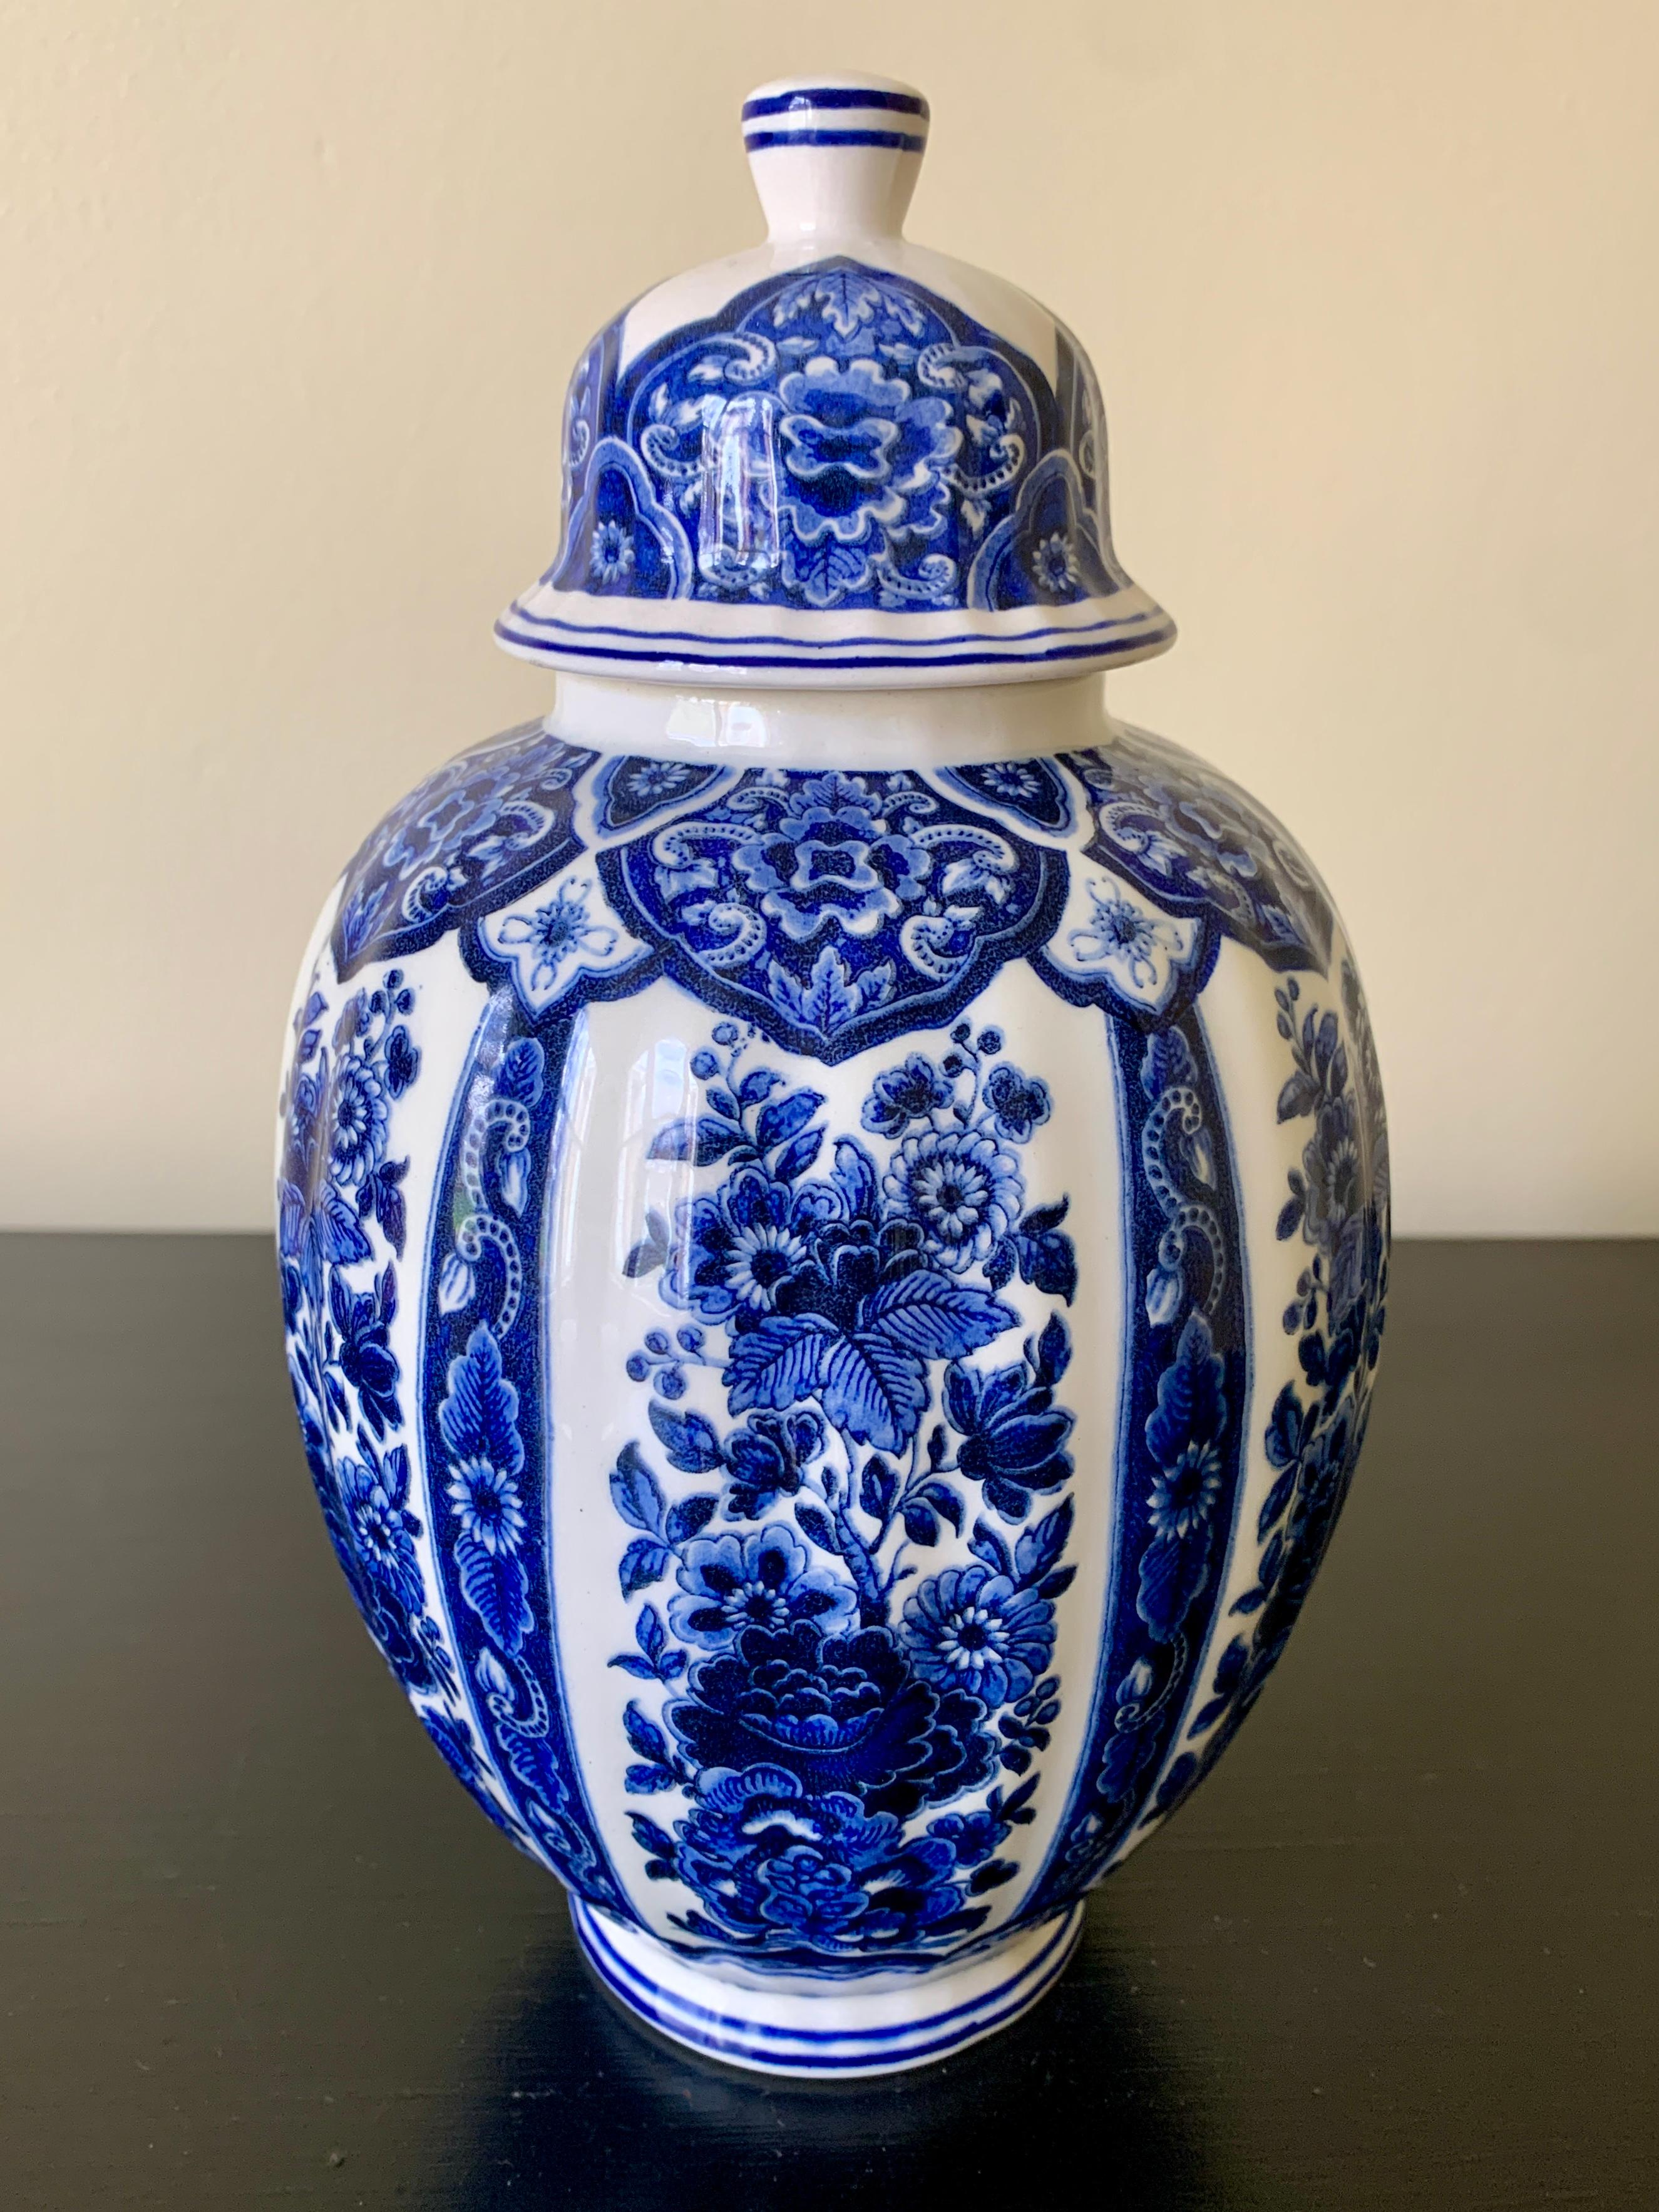 Ein schönes Delft Chinoiserie-Stil blau und weiß Porzellan bedeckt Ingwer Glas oder Tempel-Glas

Von Ardalt Blue Delfia

Italien, Mitte des 20. Jahrhunderts

Maße: 5,25ʺB × 5,25ʺT × 9,5ʺH.

In sehr gutem Vintage-Zustand.